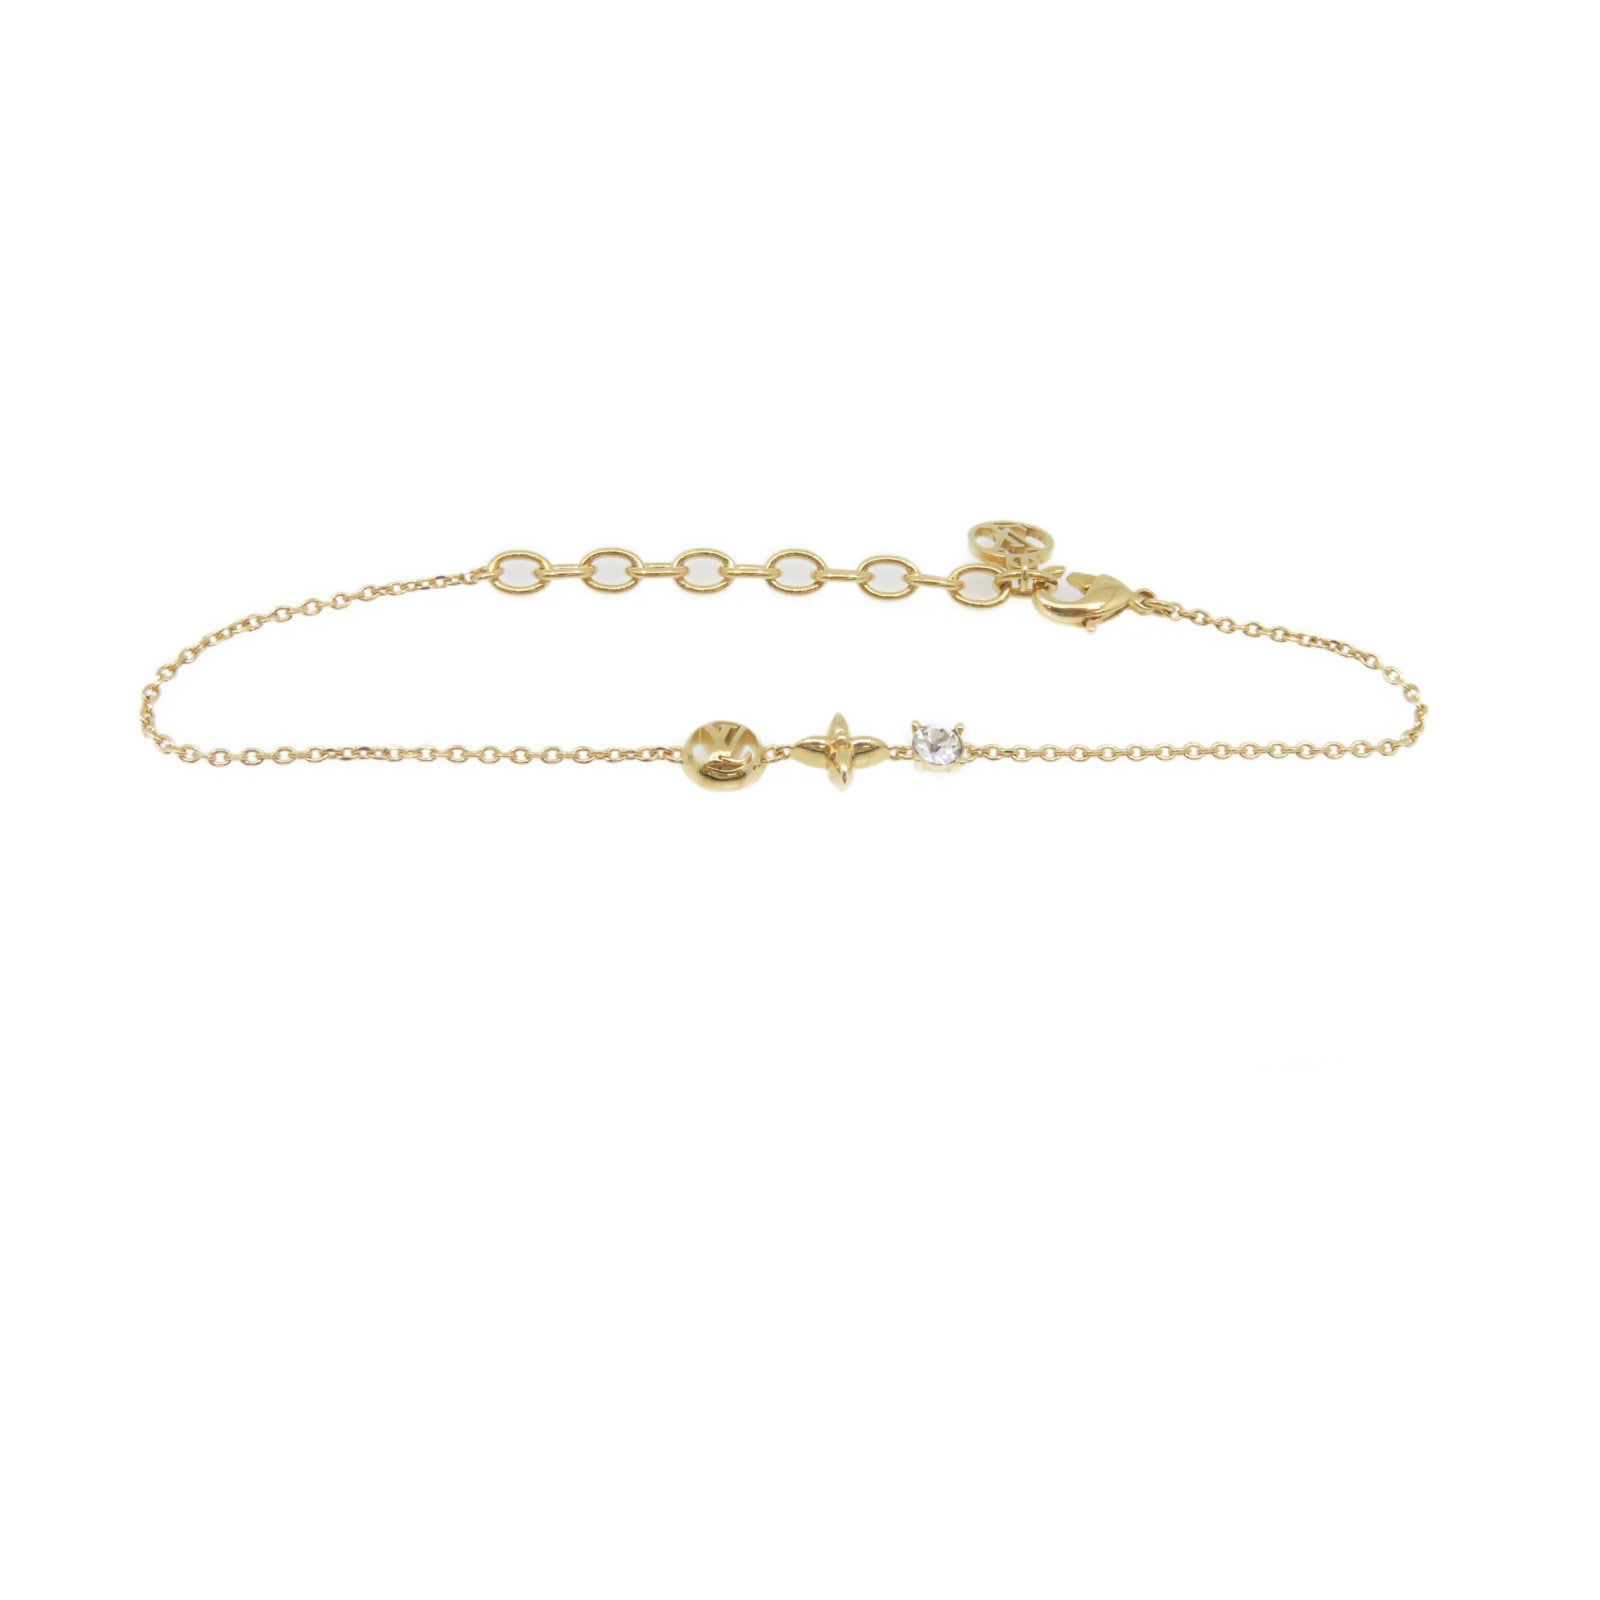 Louis Vuitton Petit louis bracelet (M00374)